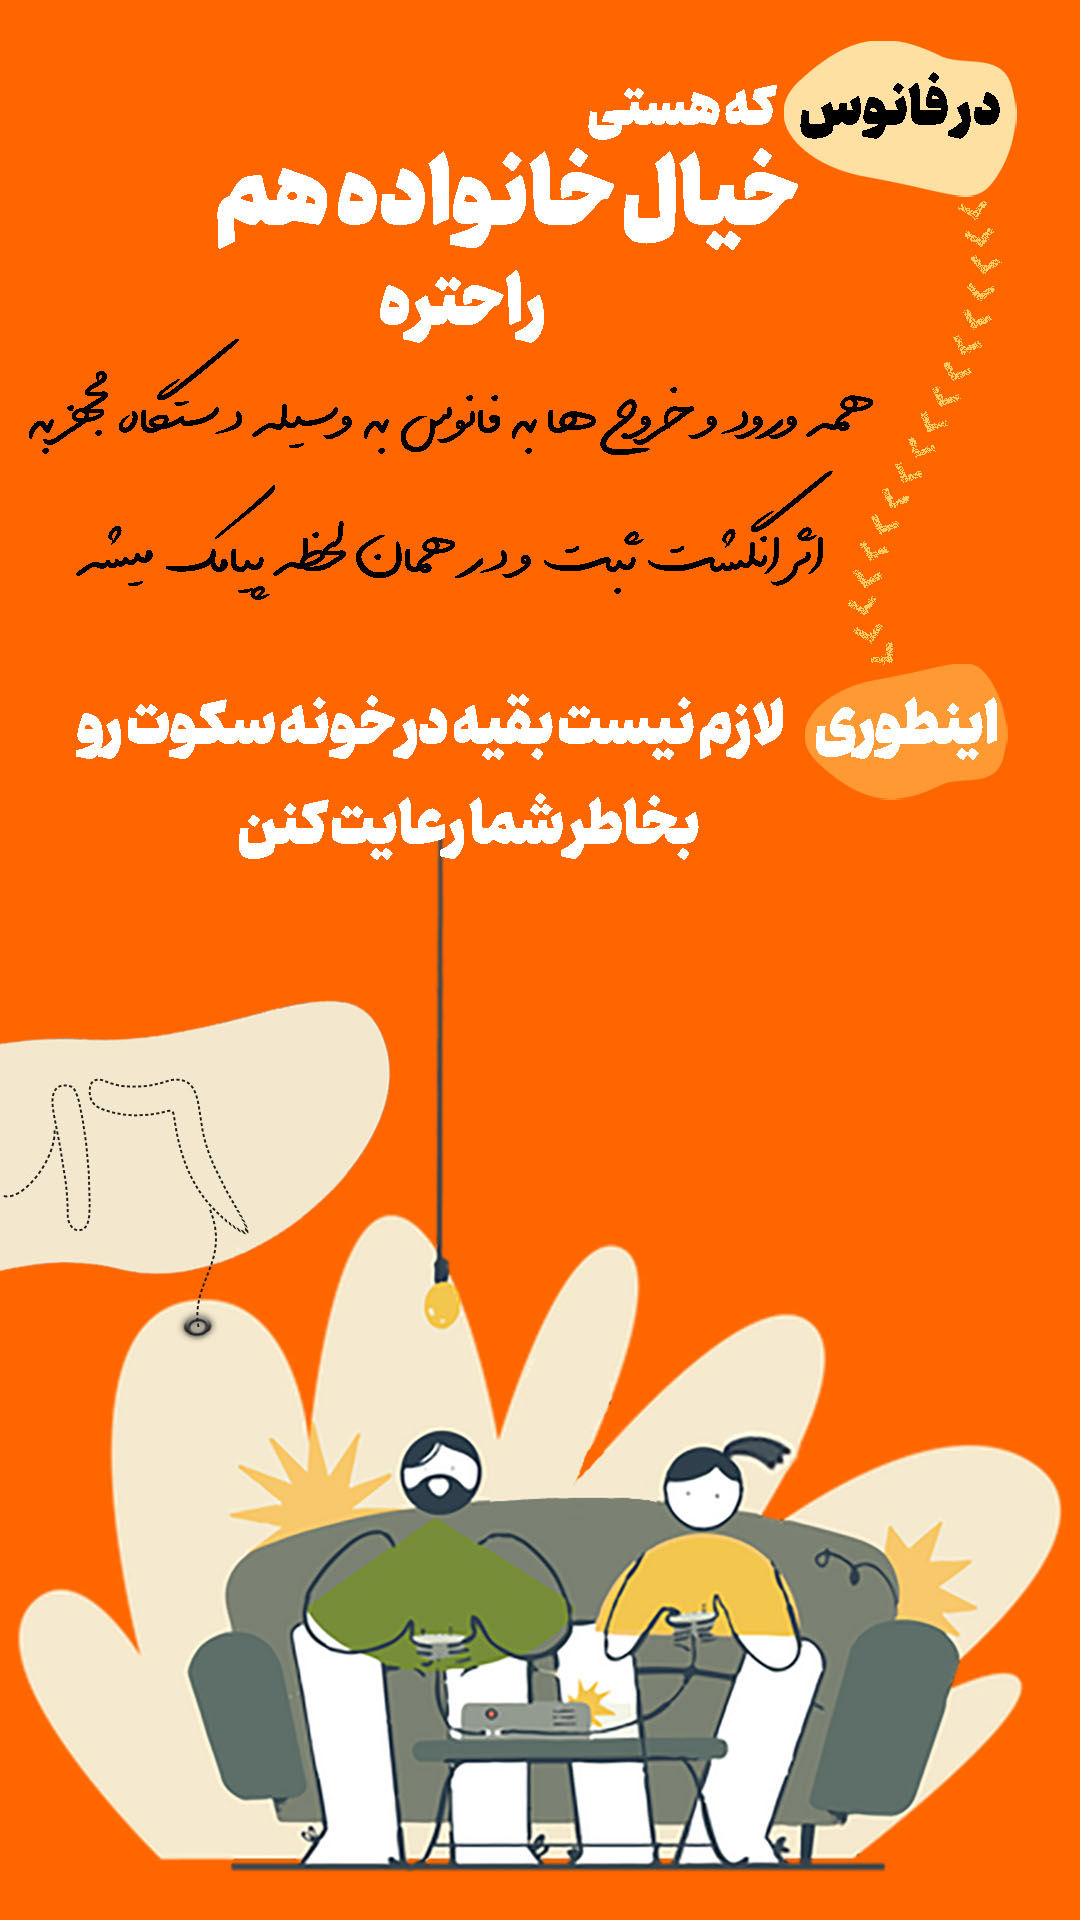 معرفی کمپ مطالعاتی شیراز16